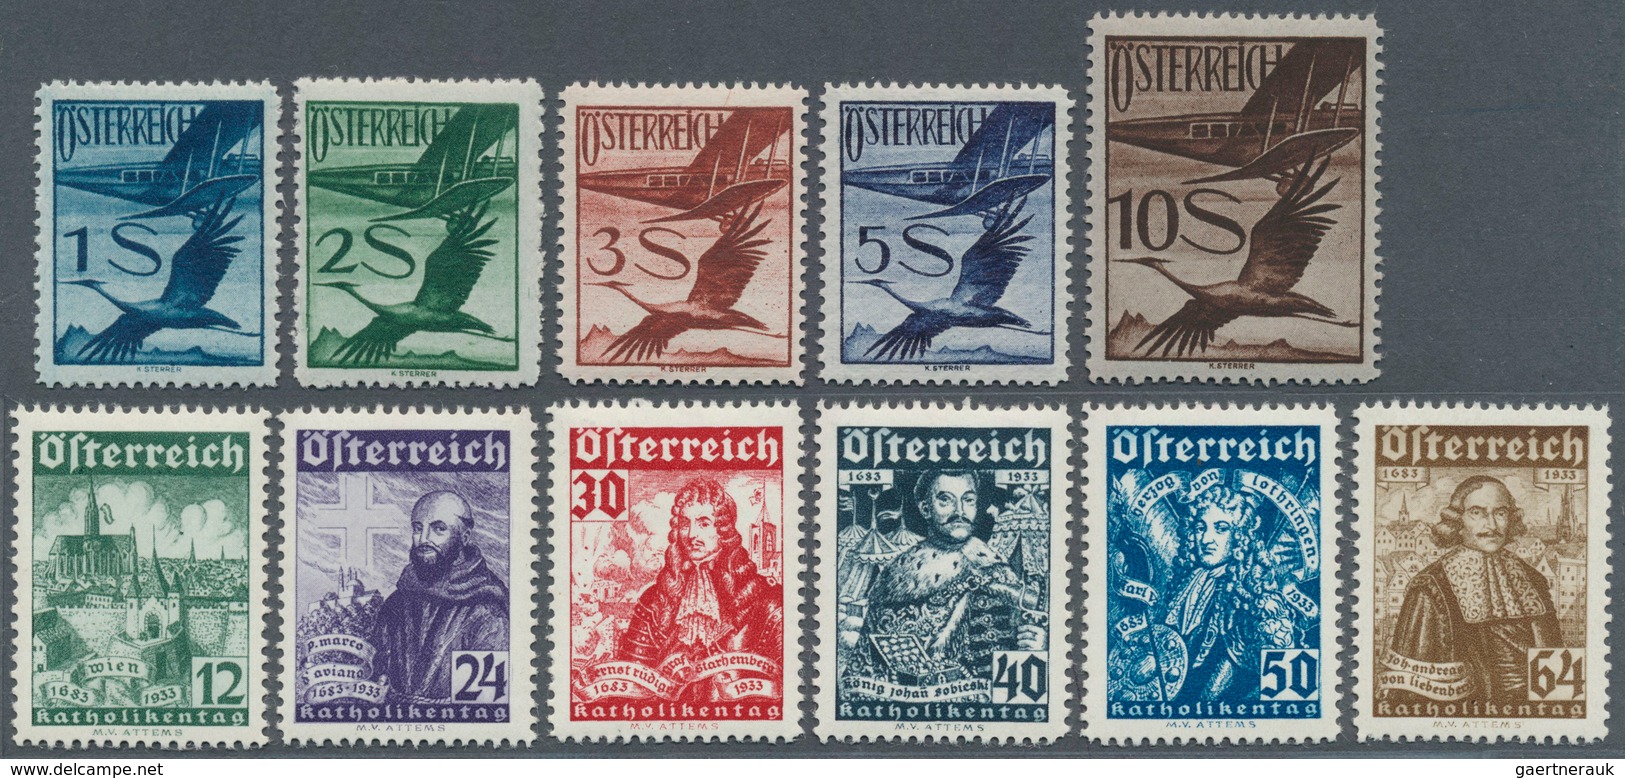 15393 Österreich: 1925/1930, Flugpostmarken 2g.-10 S., Dazu 1933, Wohlfahrt, Katholikentag 12(g.)-64 (g.), - Neufs